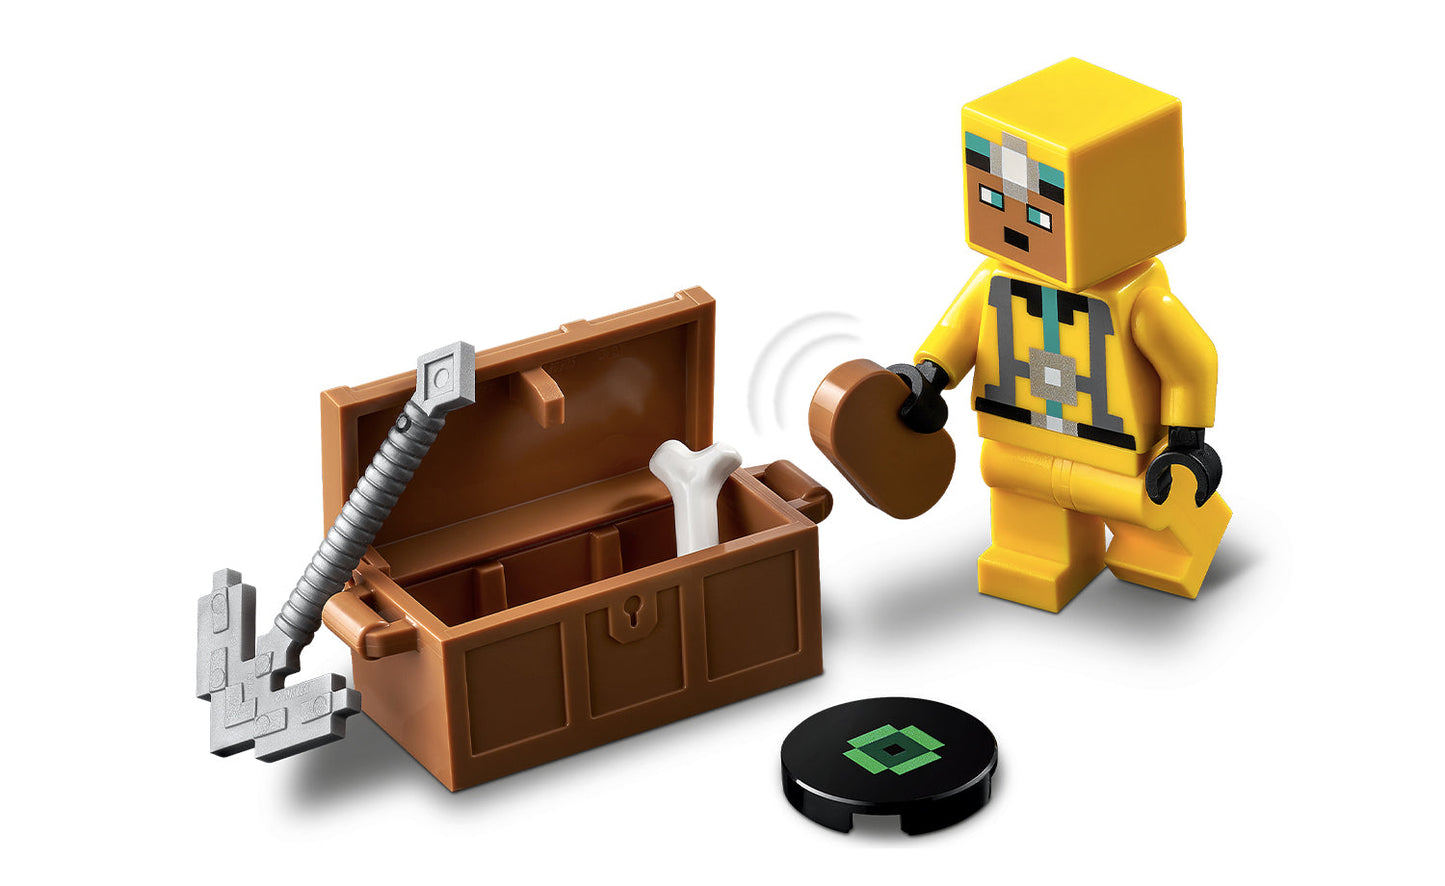 Lego Minecraft The Skeleton Dungeon - 21189